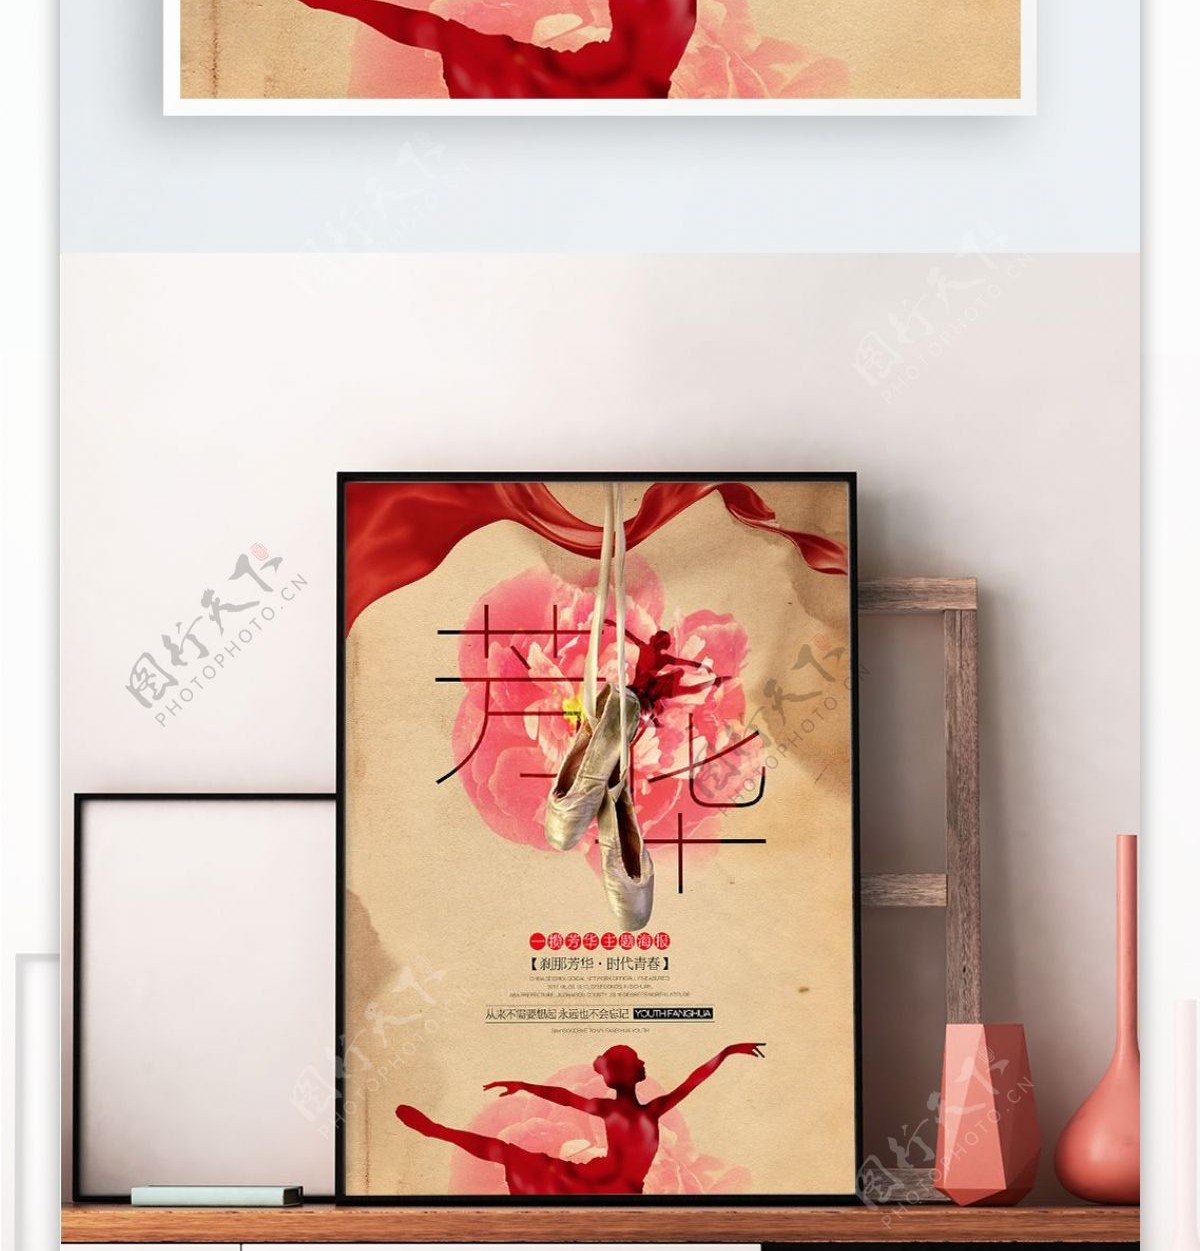 唯美复古风格芳华青春芭蕾电影宣传海报